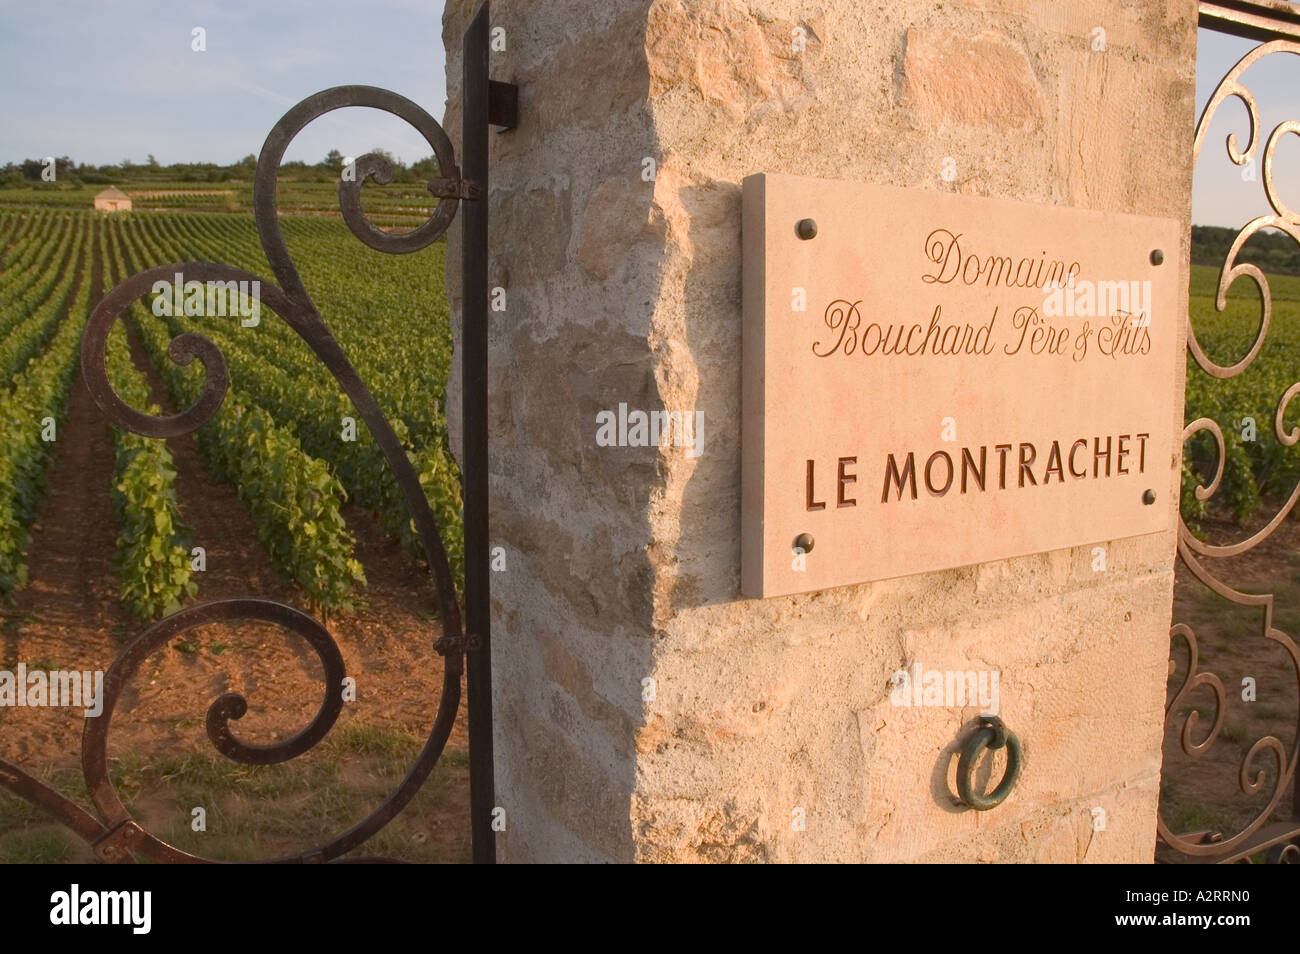 Bouchard Pere et Fils, porta alla loro sezione di Le Montrachet vigna Puligny-Montrachet, Côte de Beaune, Borgogna Francia Foto Stock